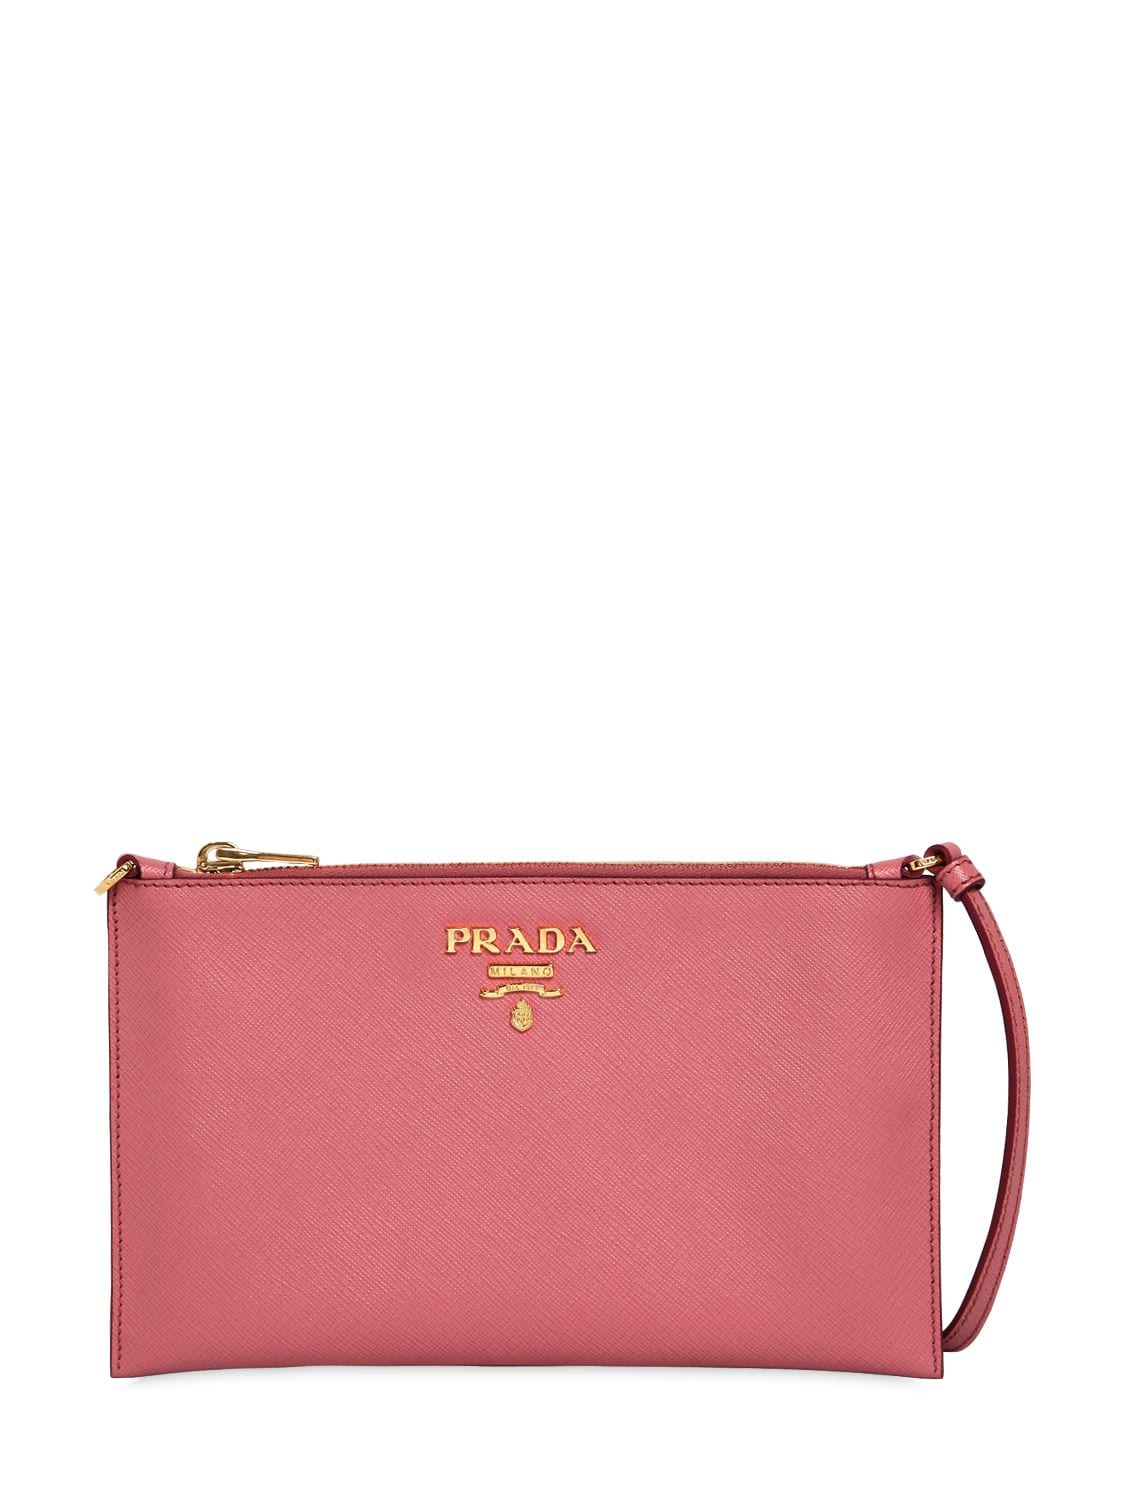 Prada Saffiano Leather Flat Shoulder Bag In Pink